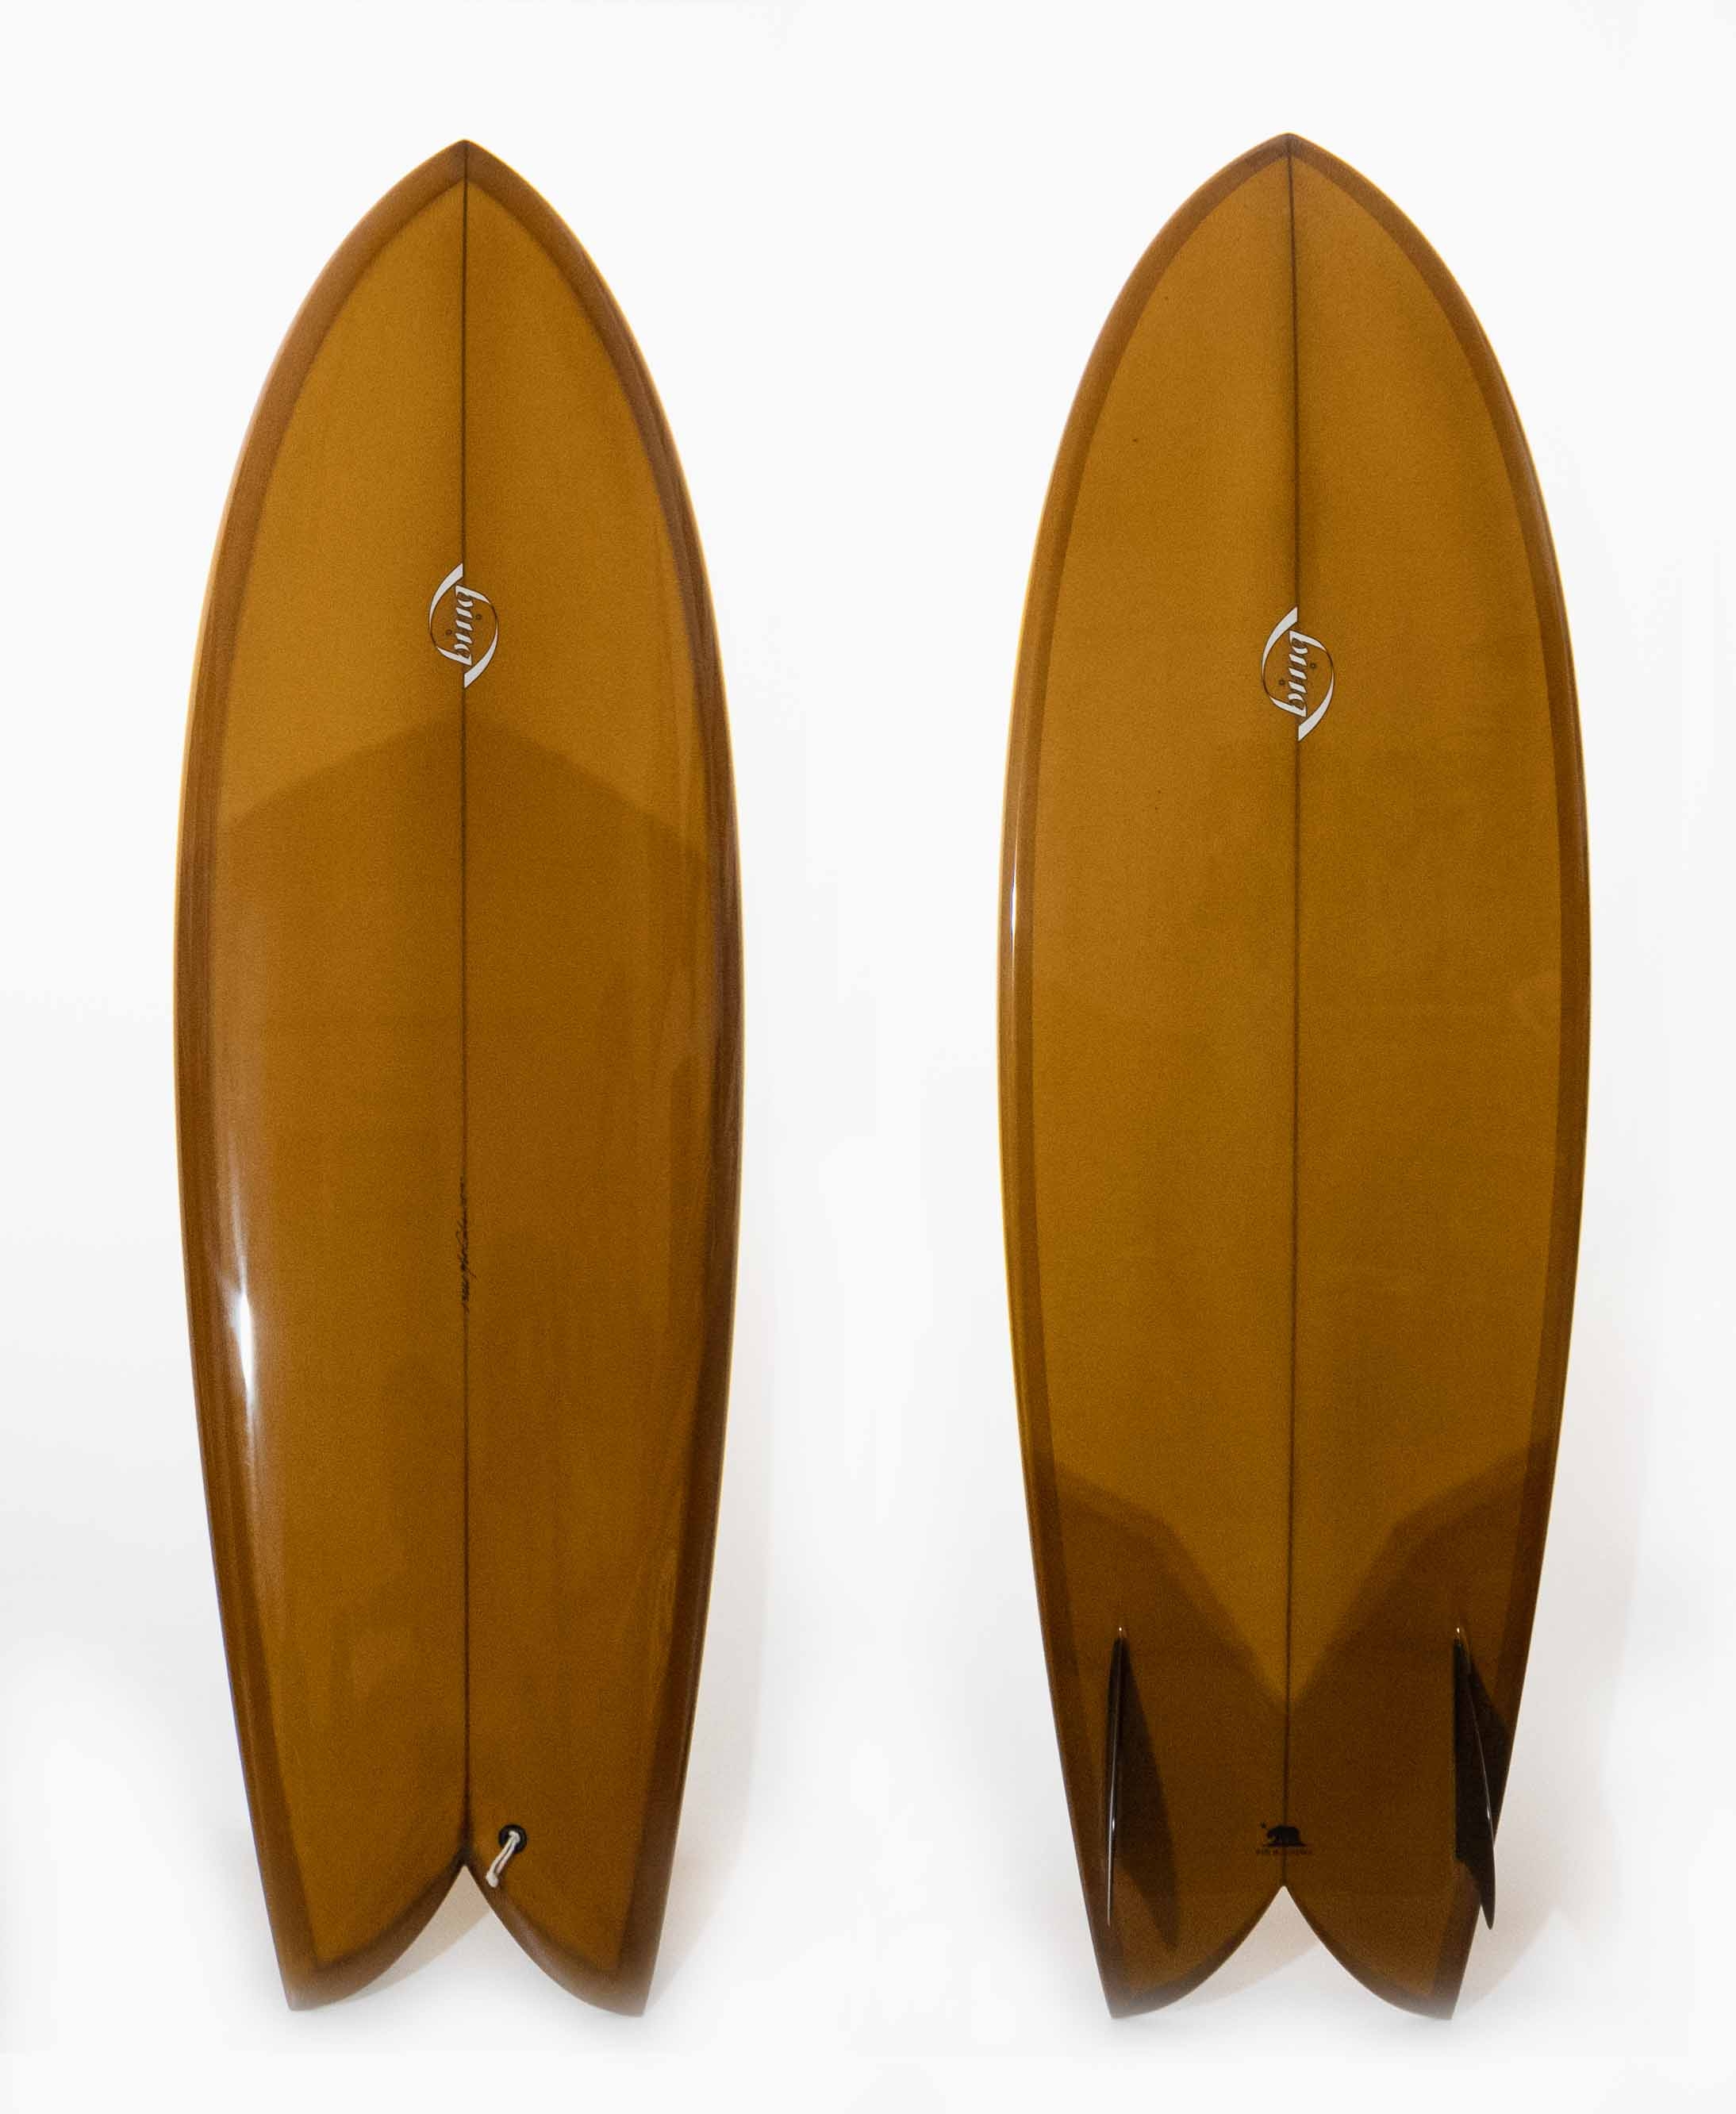 Concave Keel 5'10 Bing Surfboards - Walrus Surfshop | en